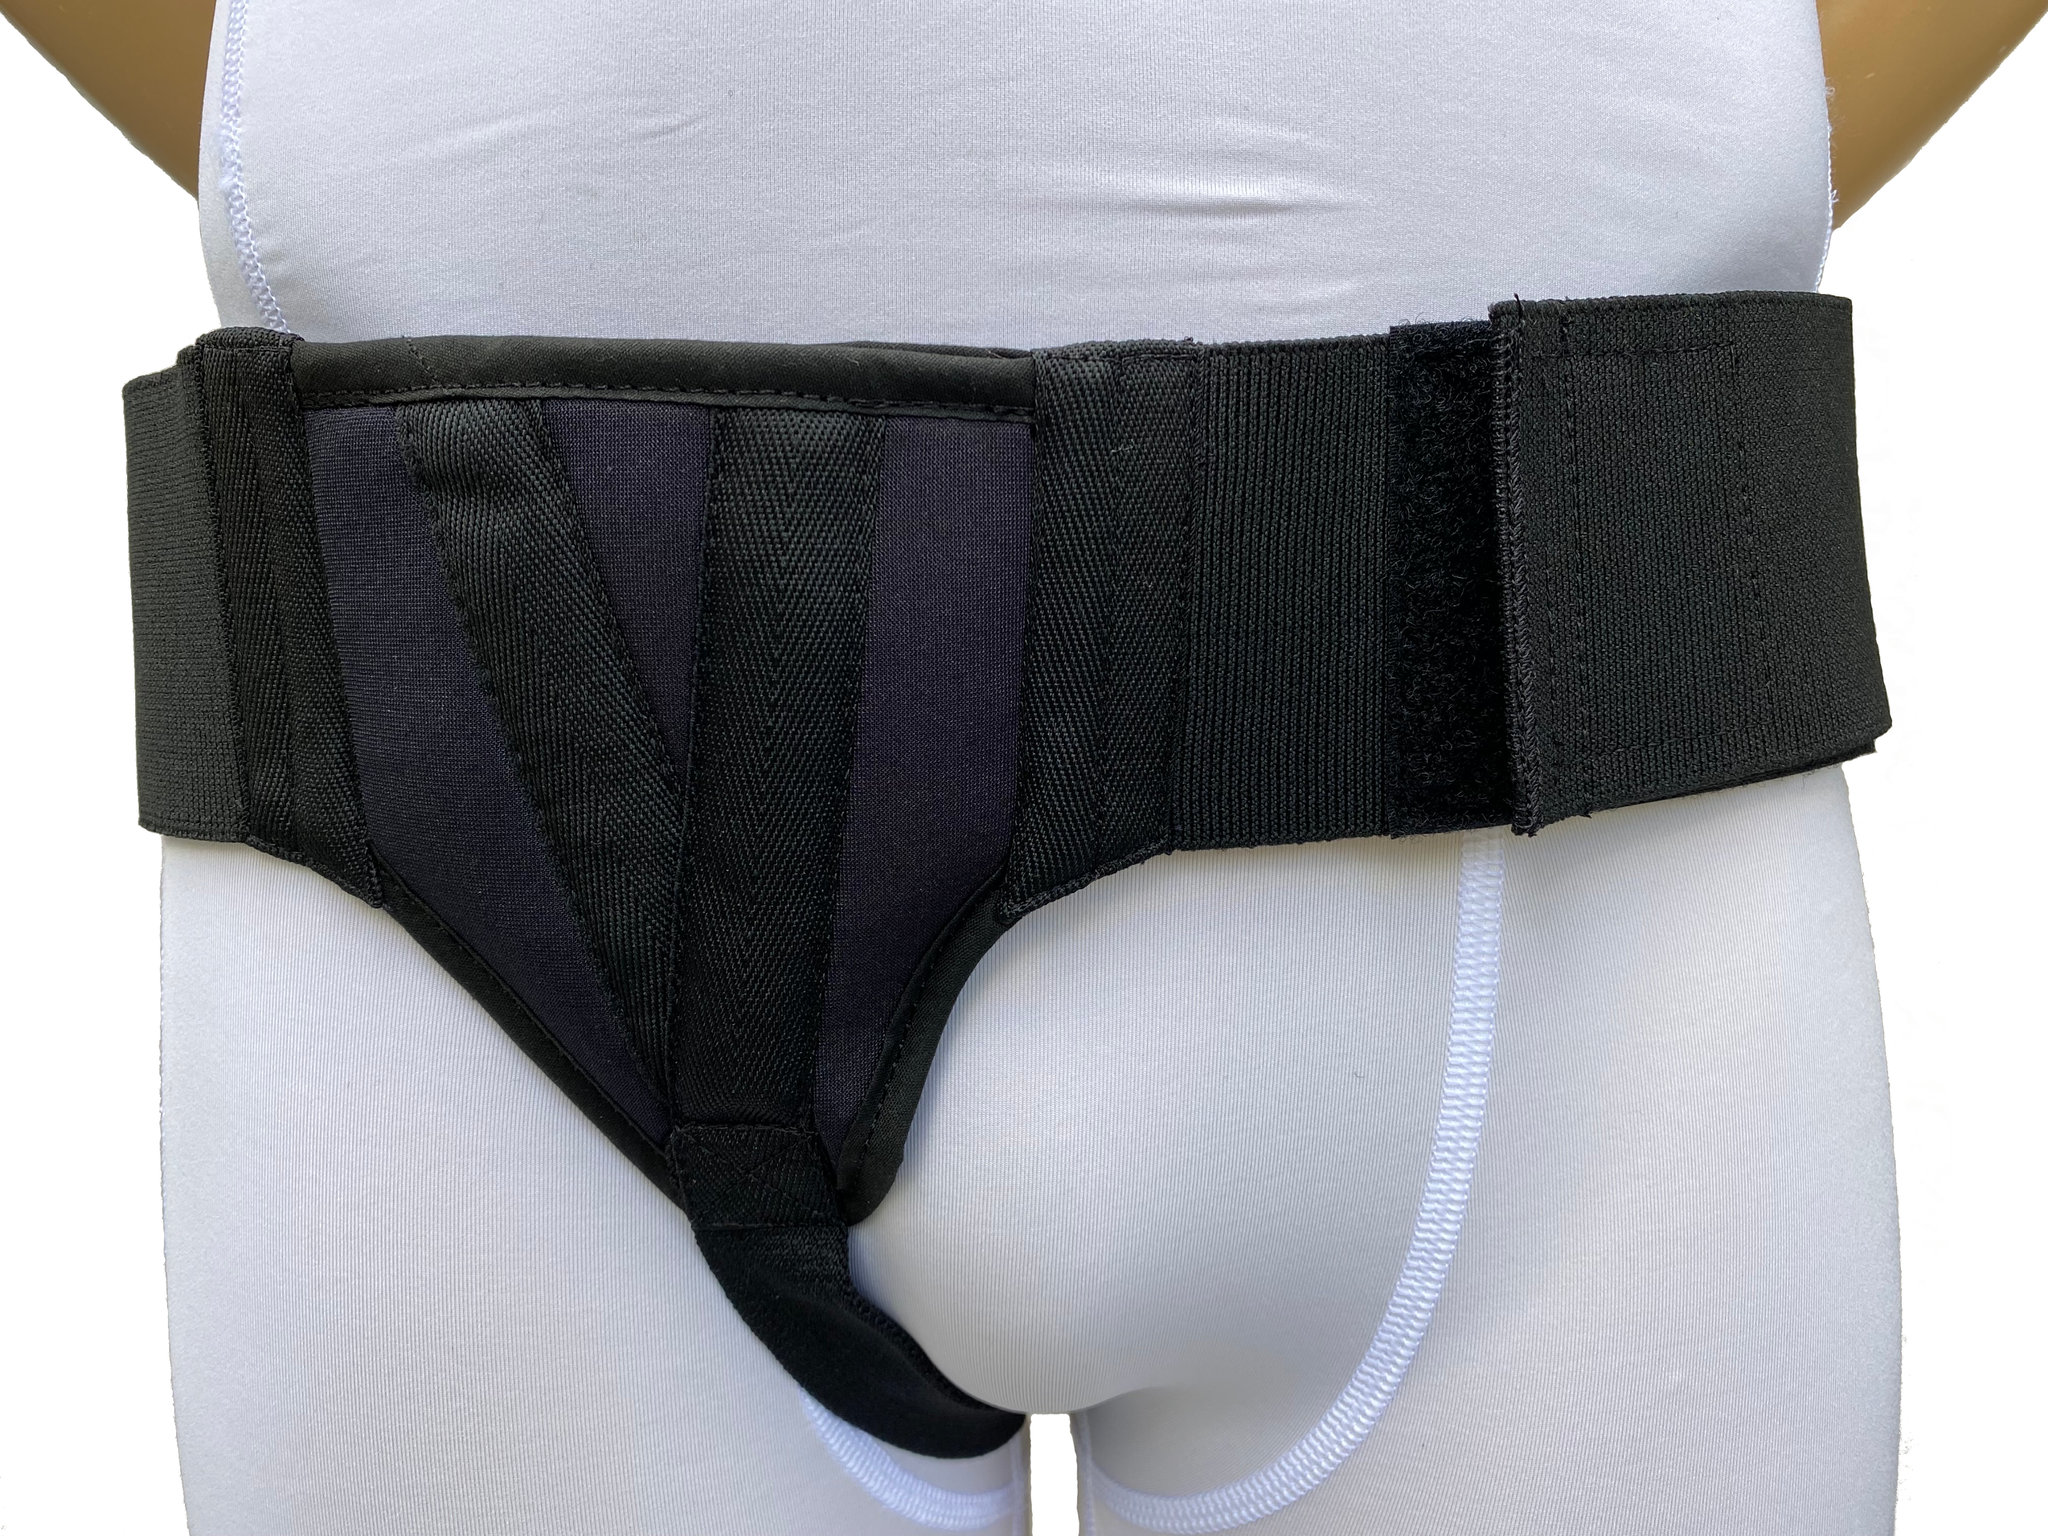 Black Hernia Belt for Men, Inguinal Hernia Support Belt Groin